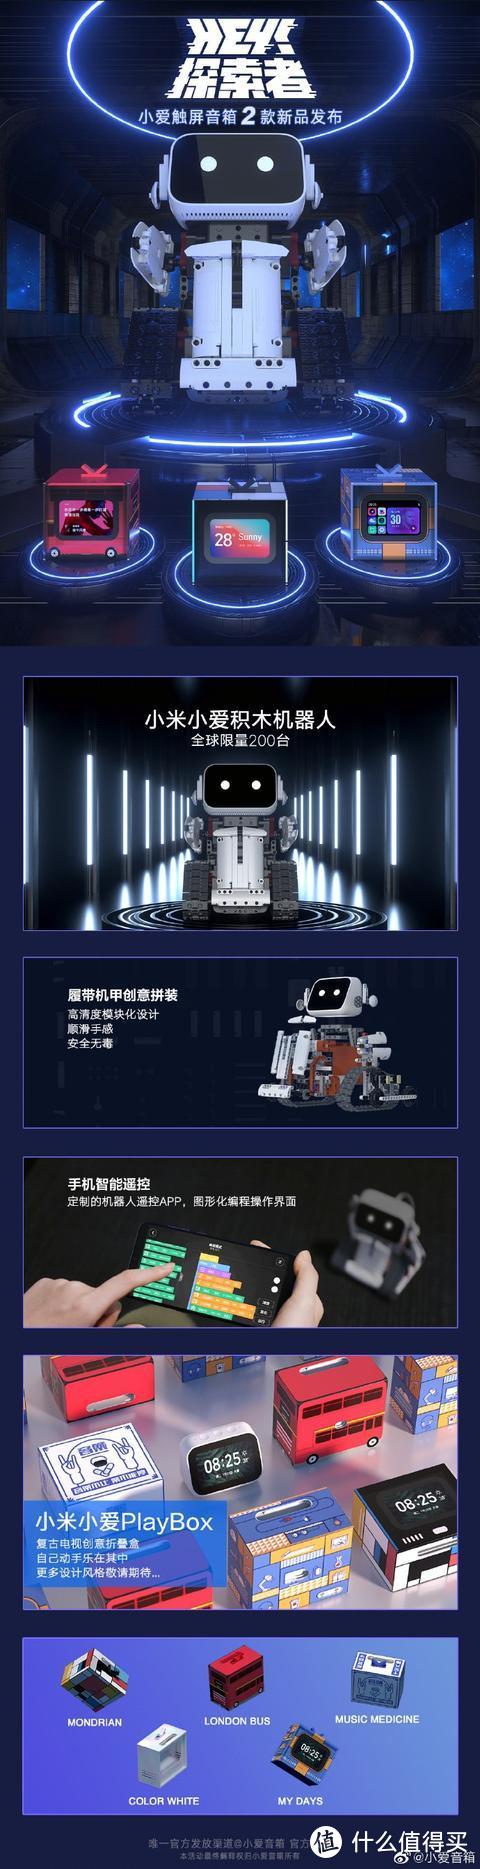 小米小爱音箱发布两款新品 荣耀智慧屏将取消开机广告